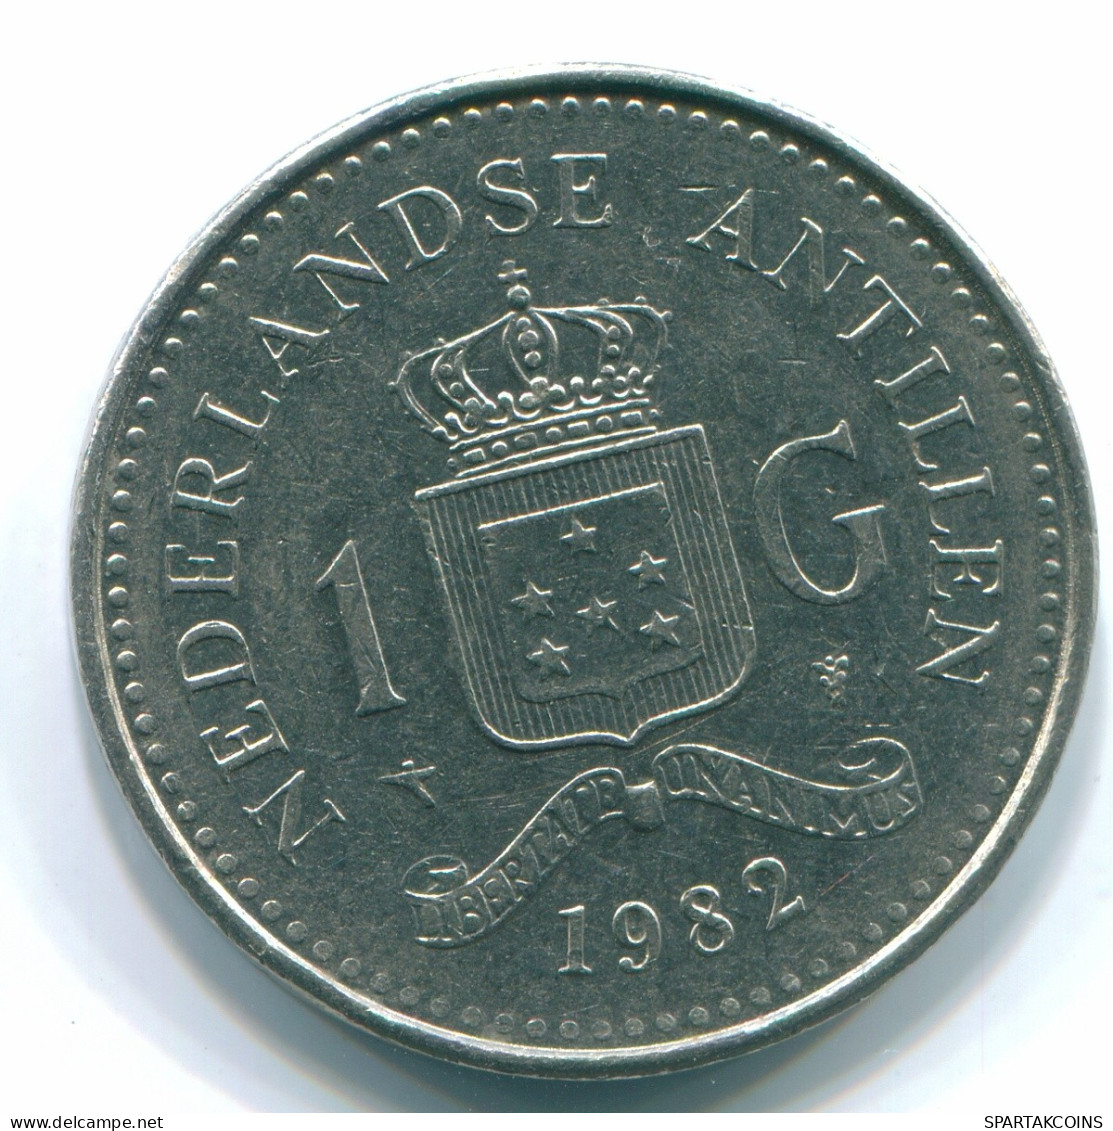 1 GULDEN 1982 NIEDERLÄNDISCHE ANTILLEN Nickel Koloniale Münze #S12049.D.A - Antille Olandesi